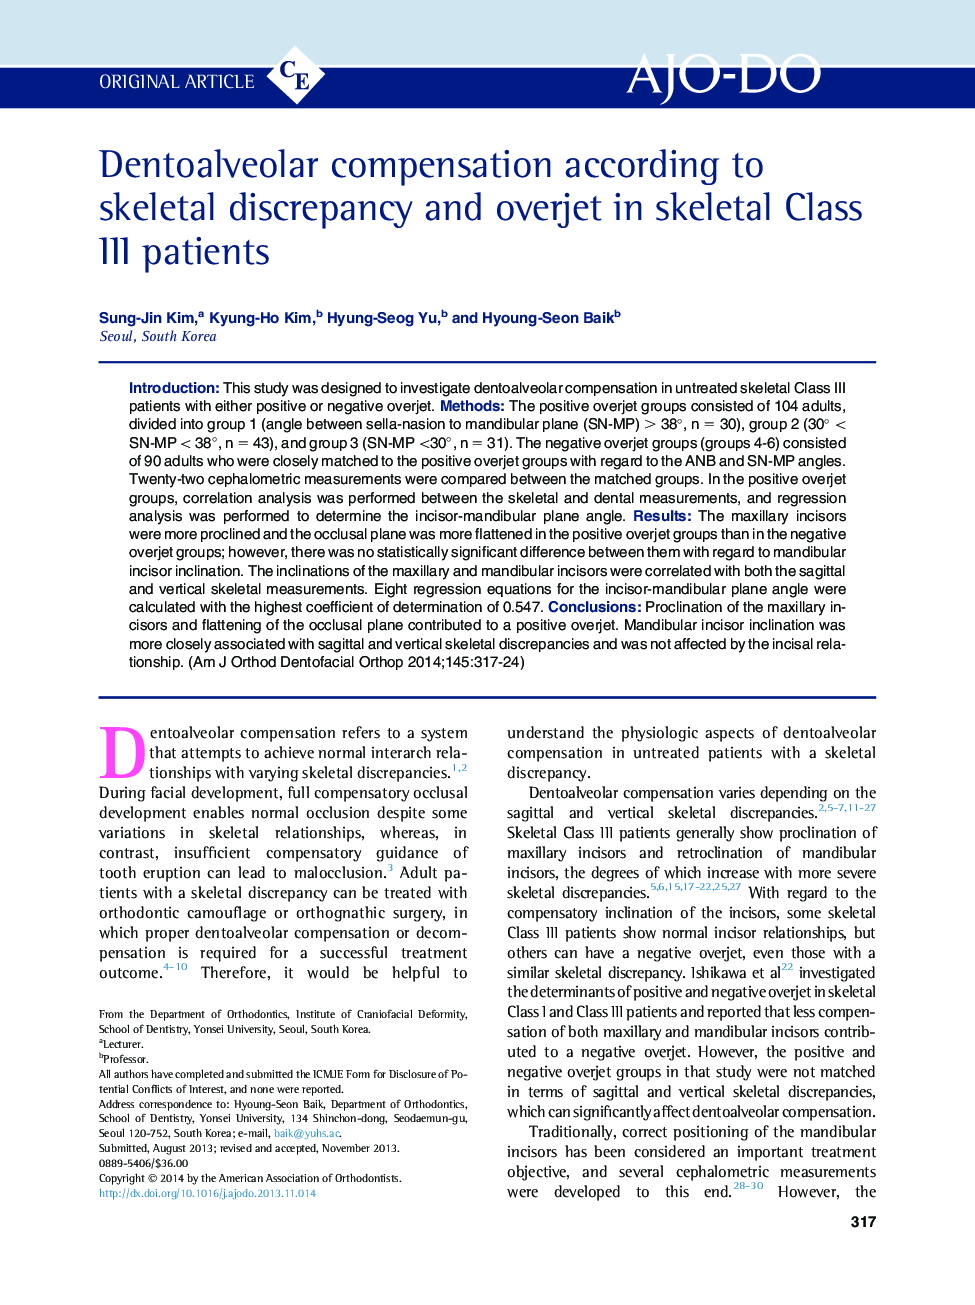 Dentoalveolar compensation according to skeletal discrepancy and overjet in skeletal Class III patients 